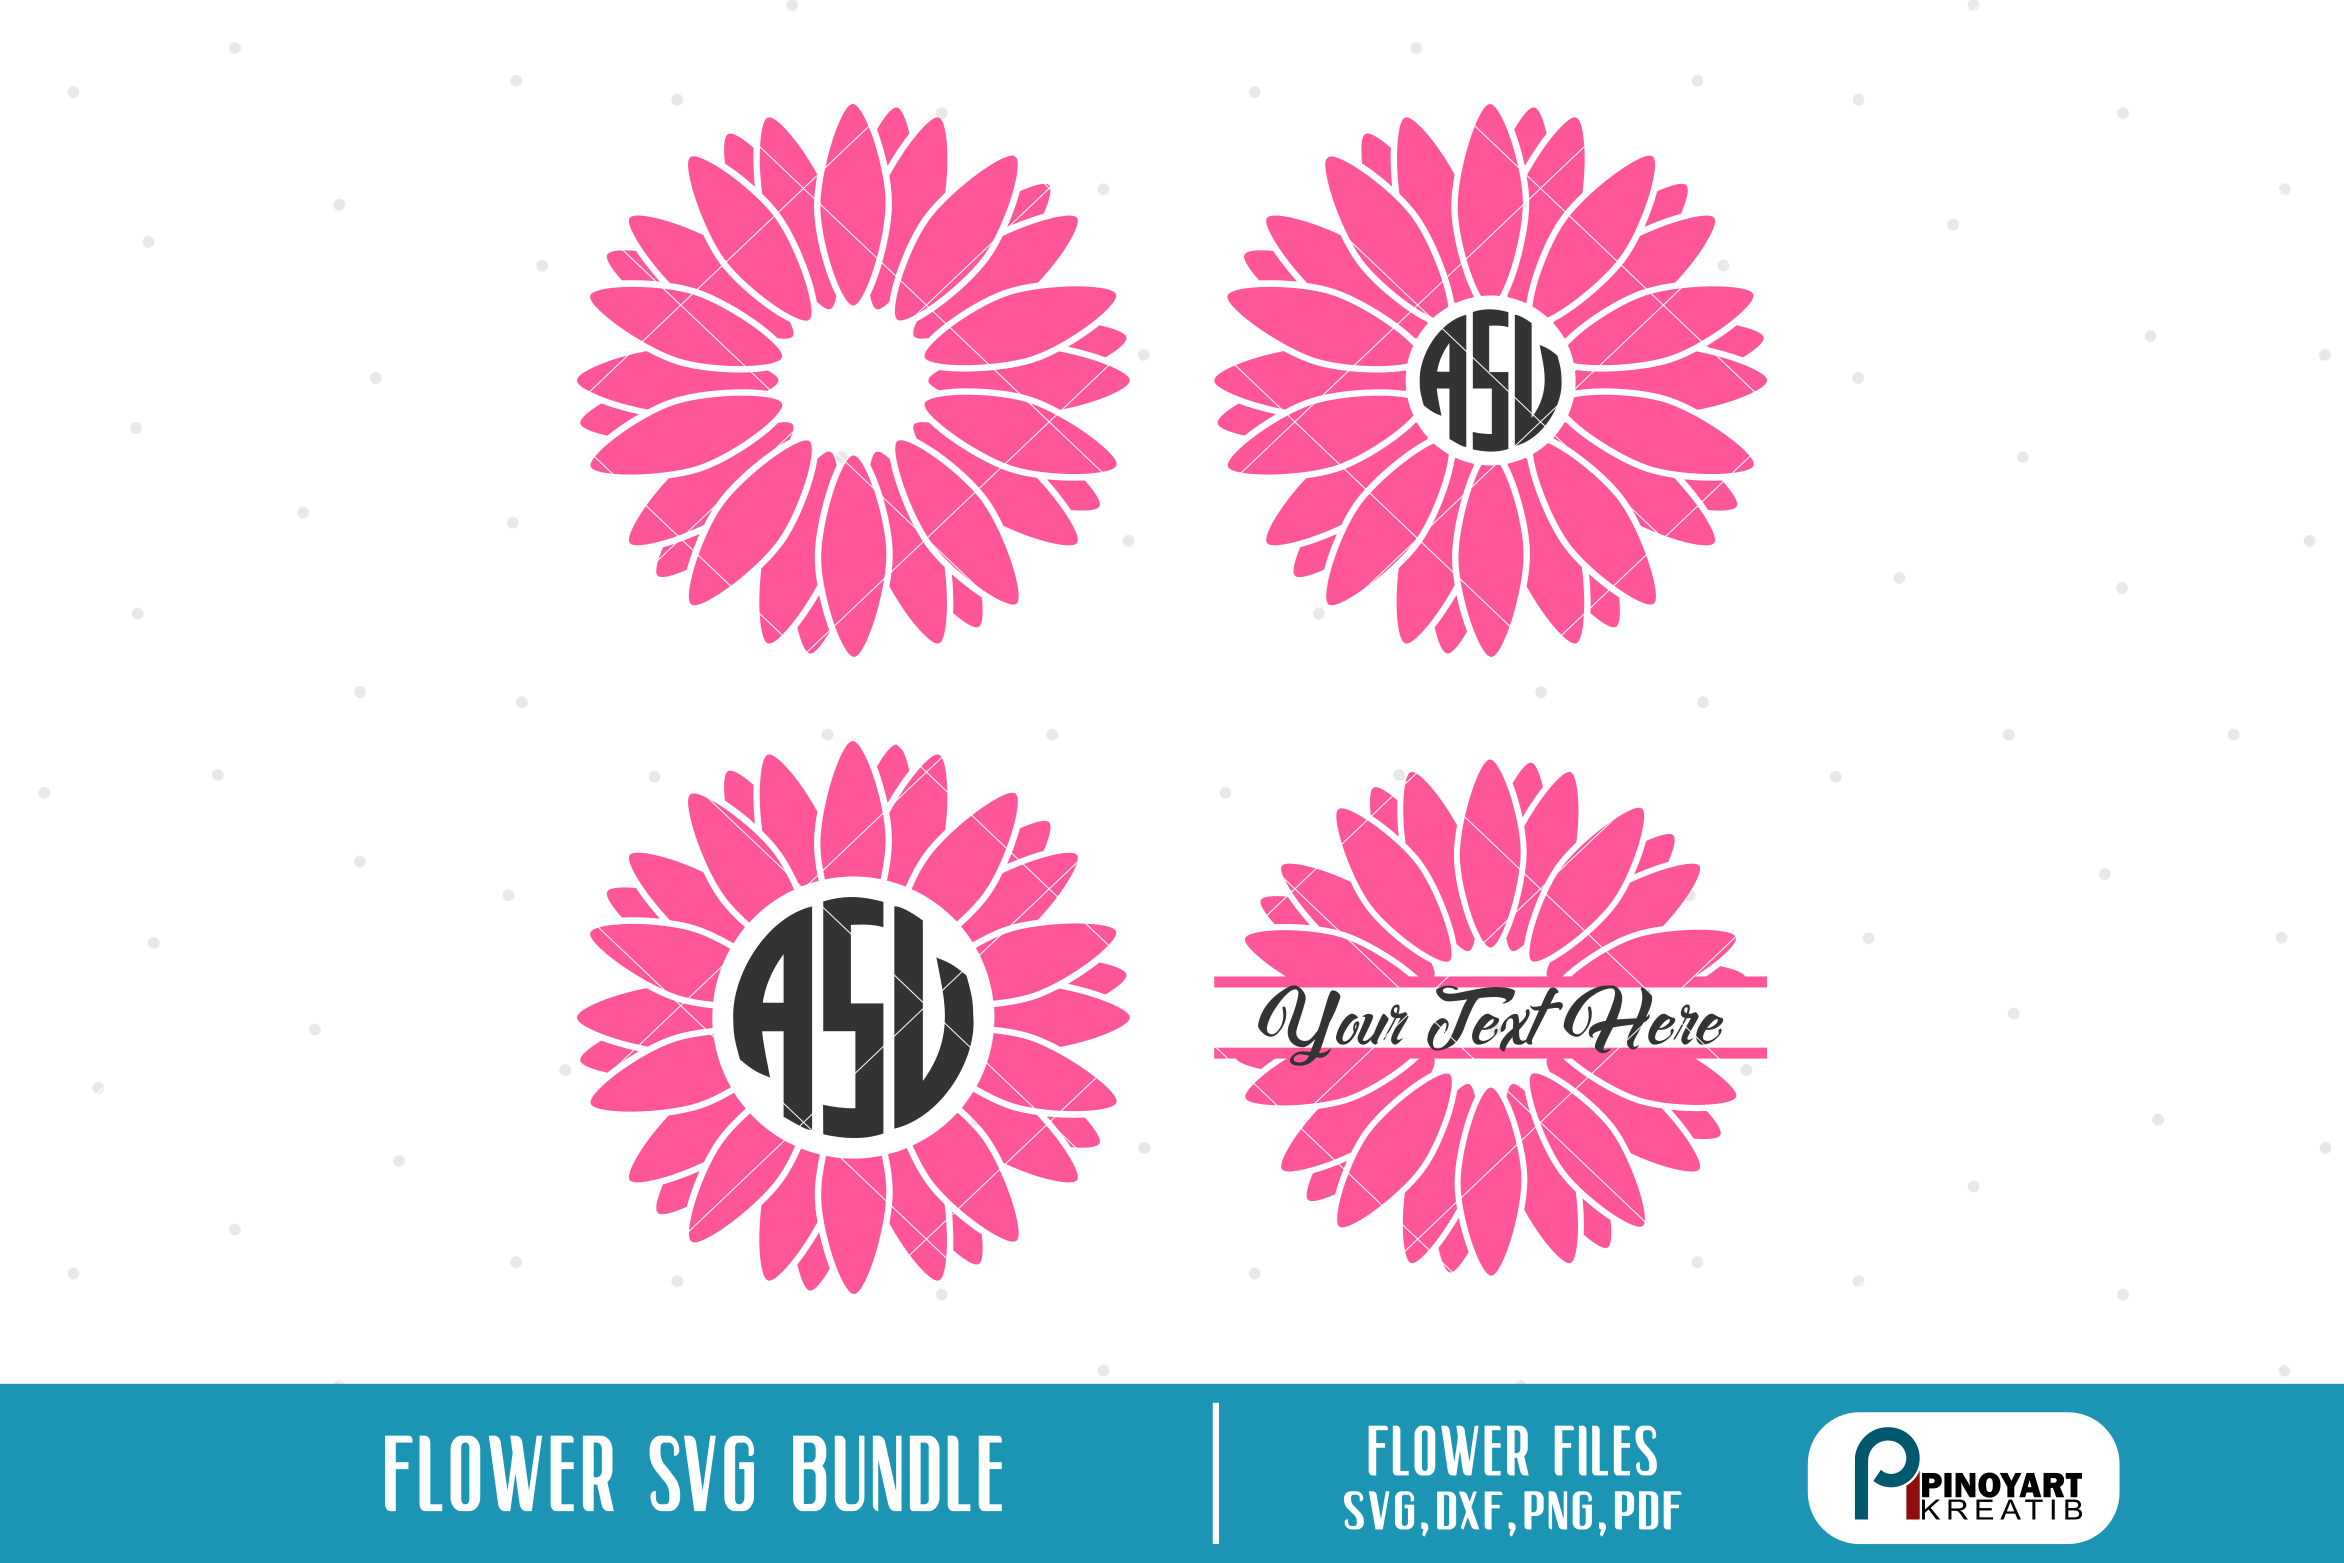 Download flower svg,flower clip art,flower svg file,flower cut file